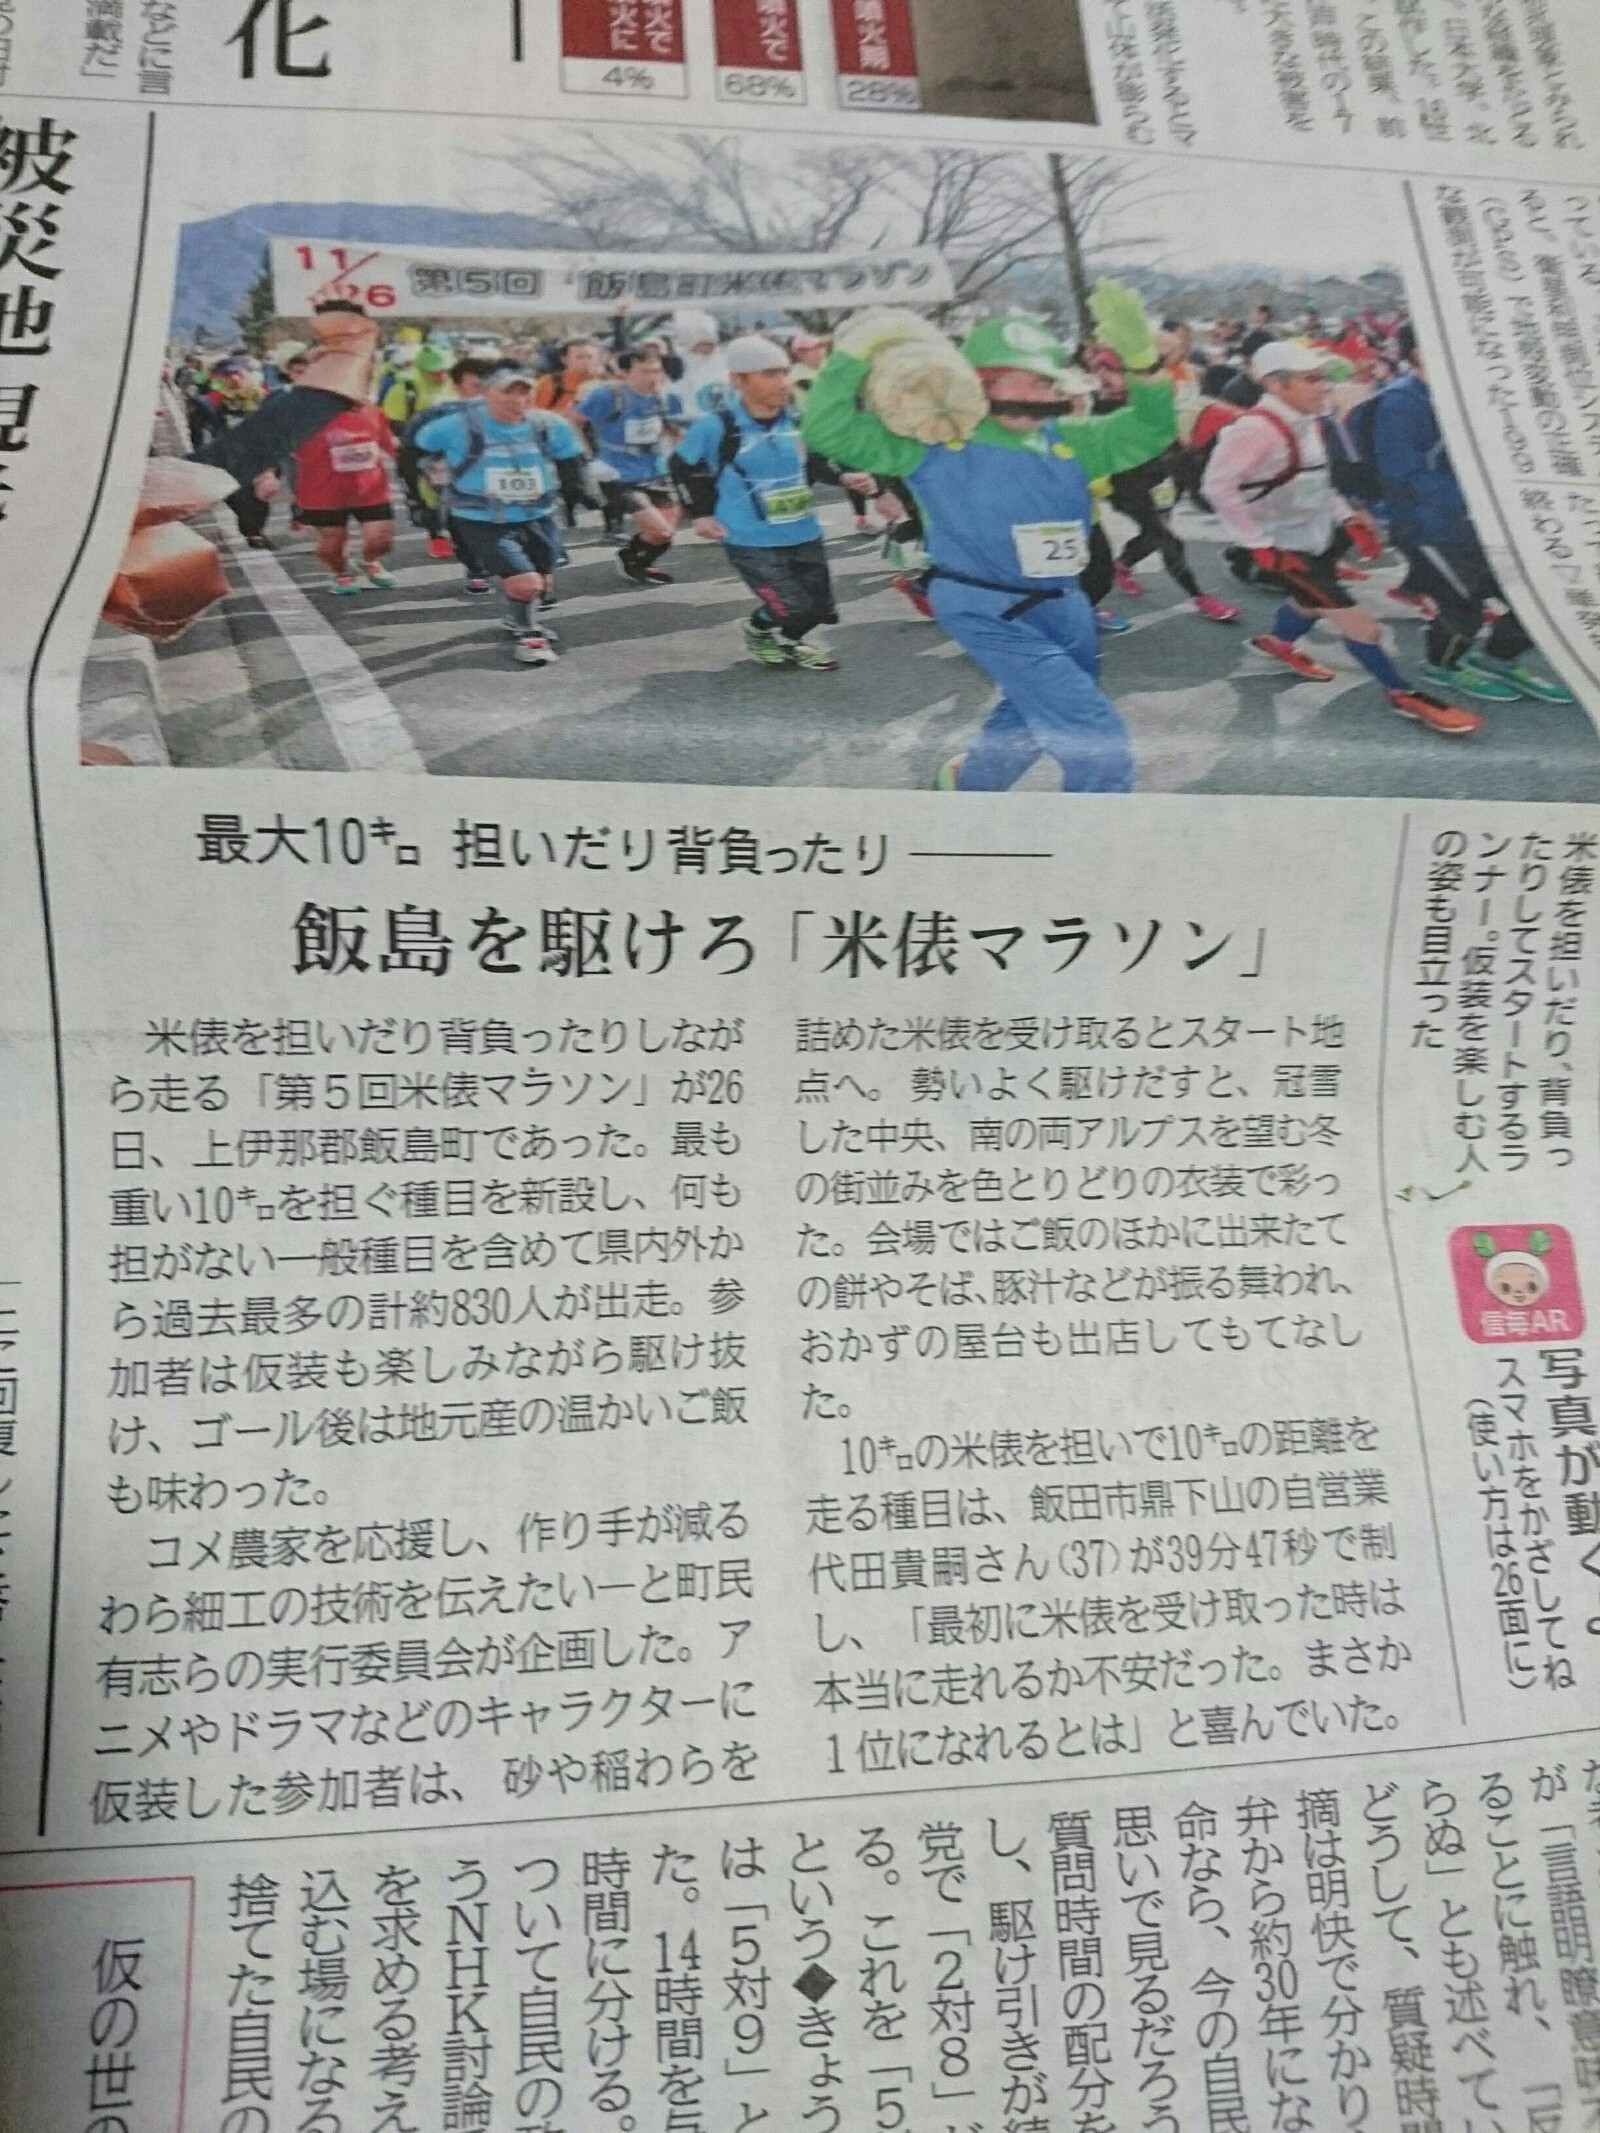 信濃毎日新聞「米俵マラソン」